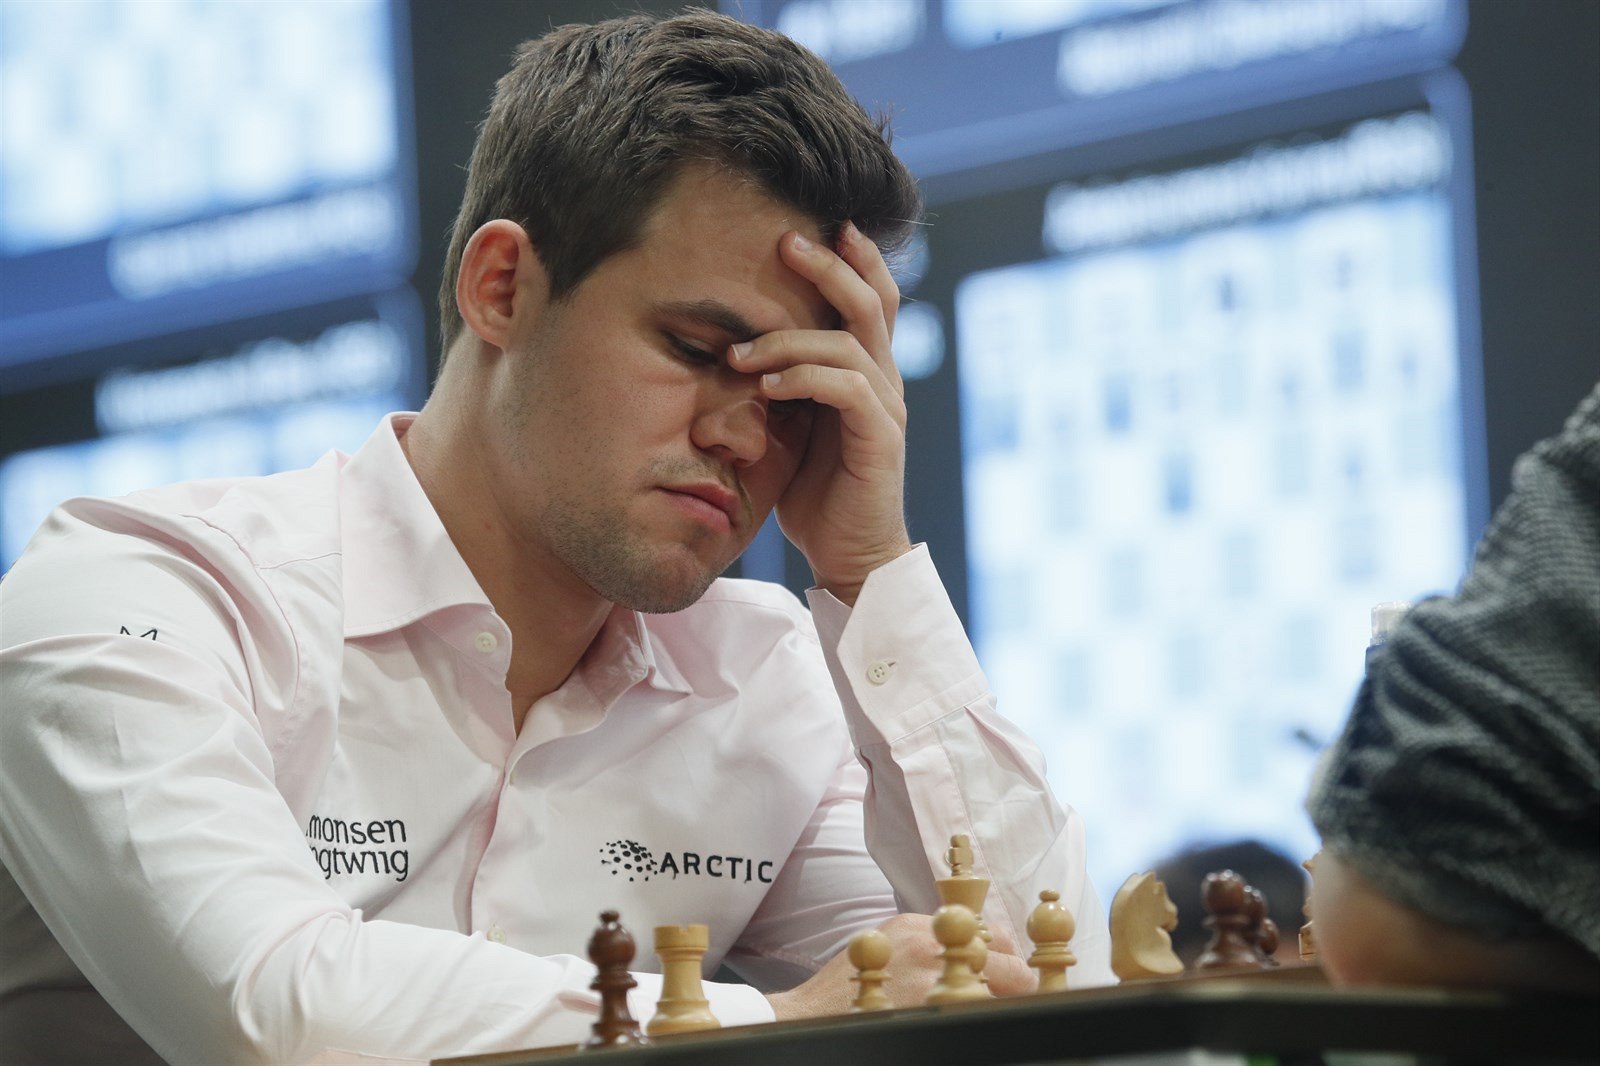 Šachový král Carlsen vyhrál další online turnaj, tentokrát z Dánska -  iDNES.cz